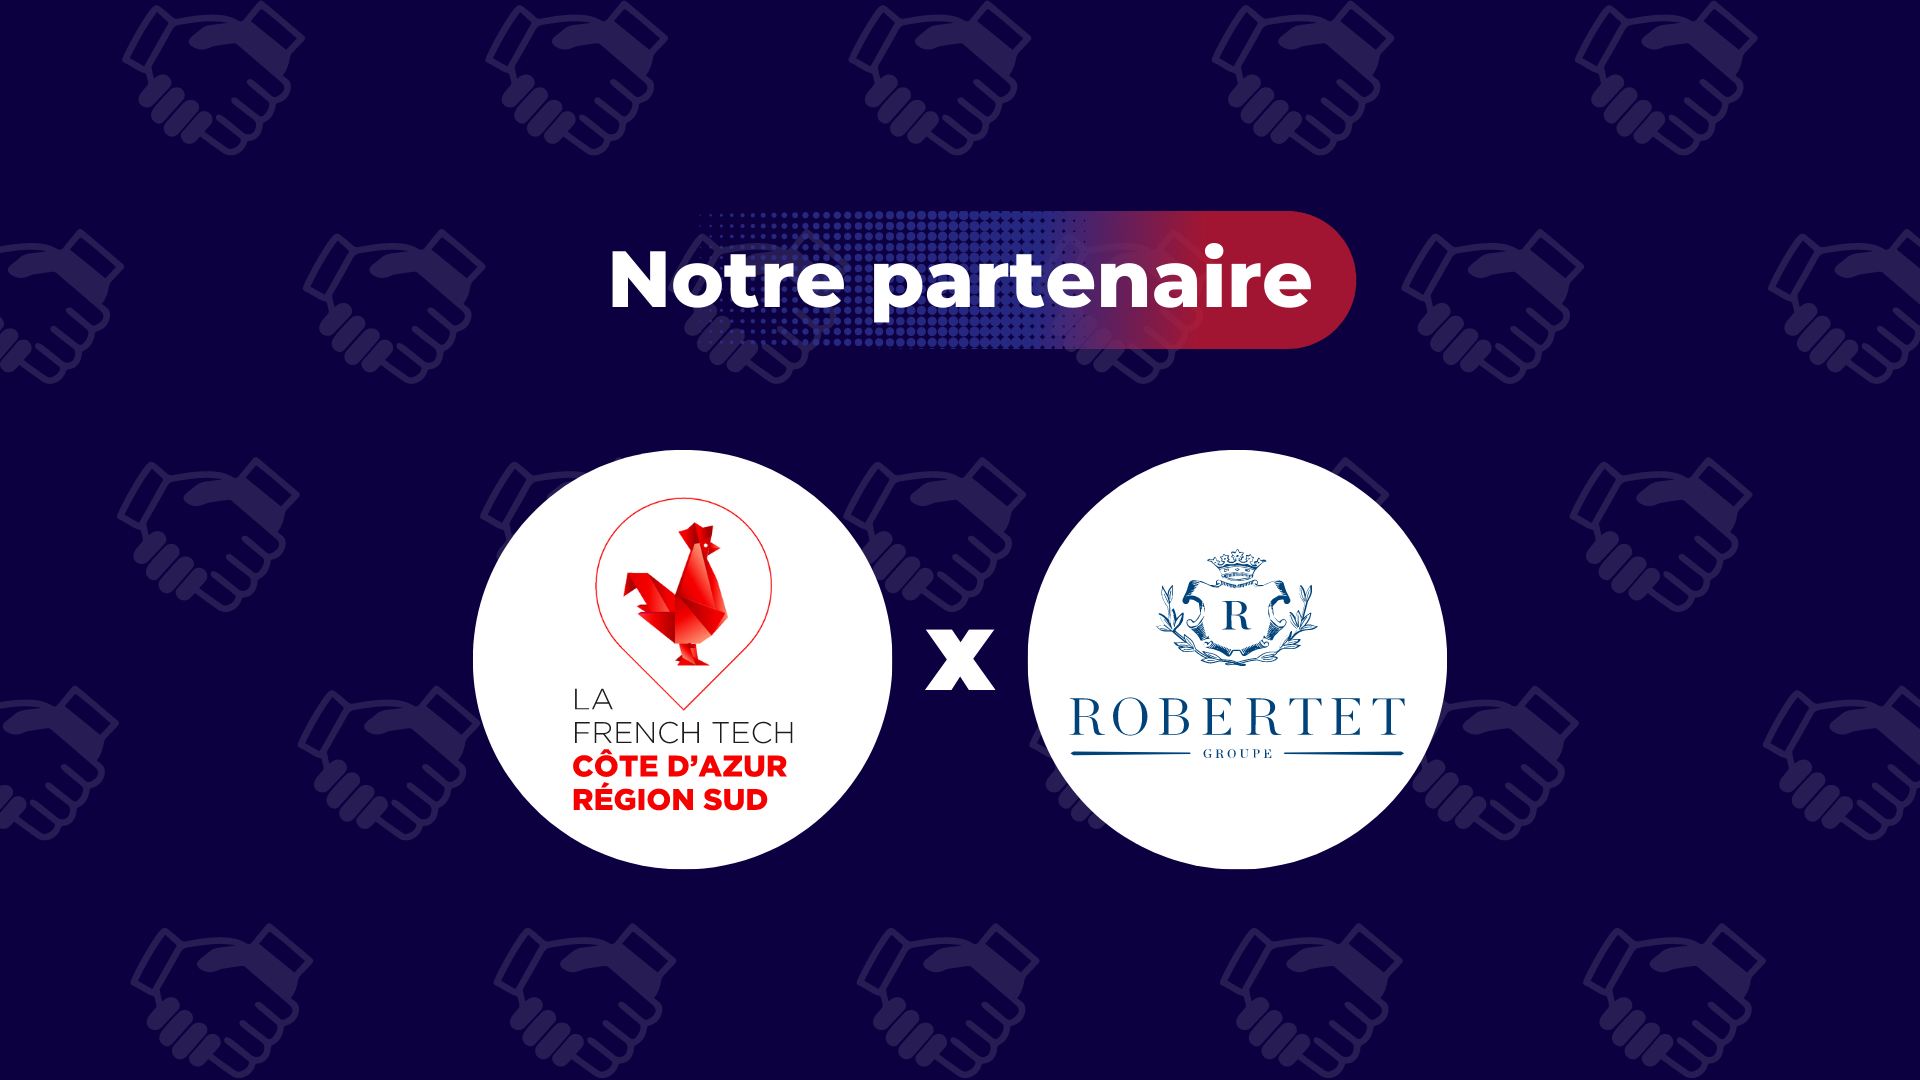 Notre partenaire Robertet Group